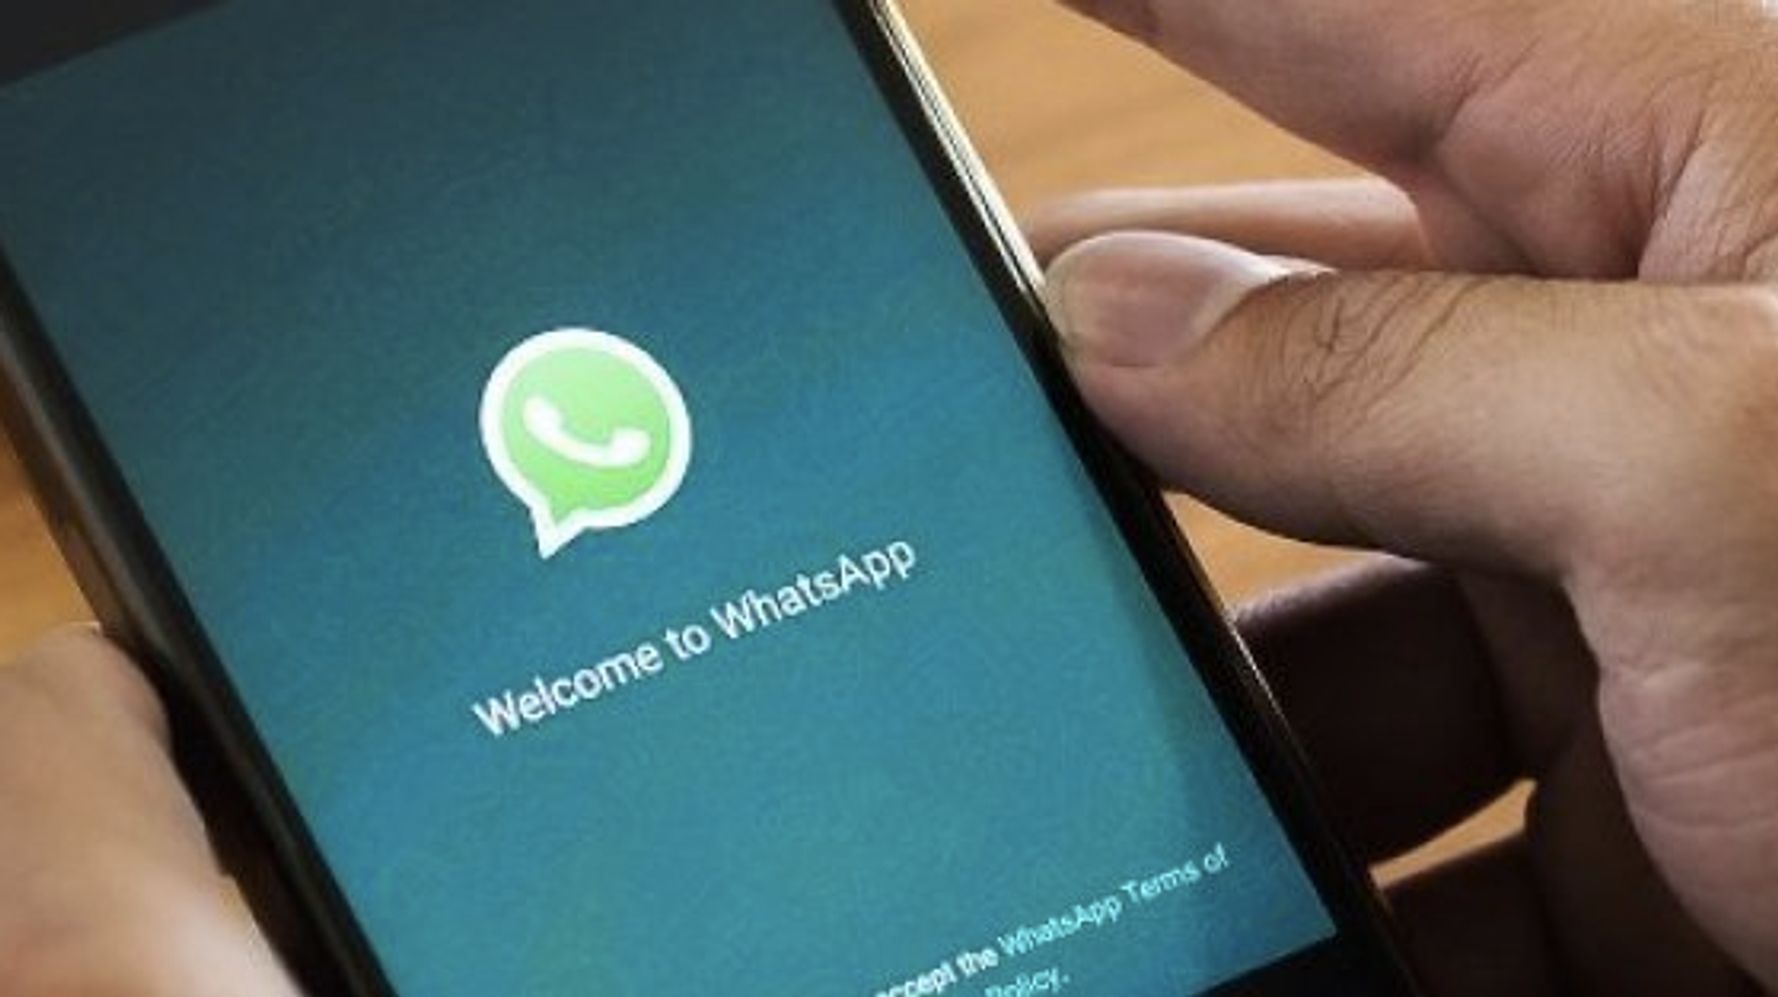 Descubren Una Vulnerabilidad En Whatsapp Que Permitiría Interceptar Mensajes El Huffpost Noticias 5923